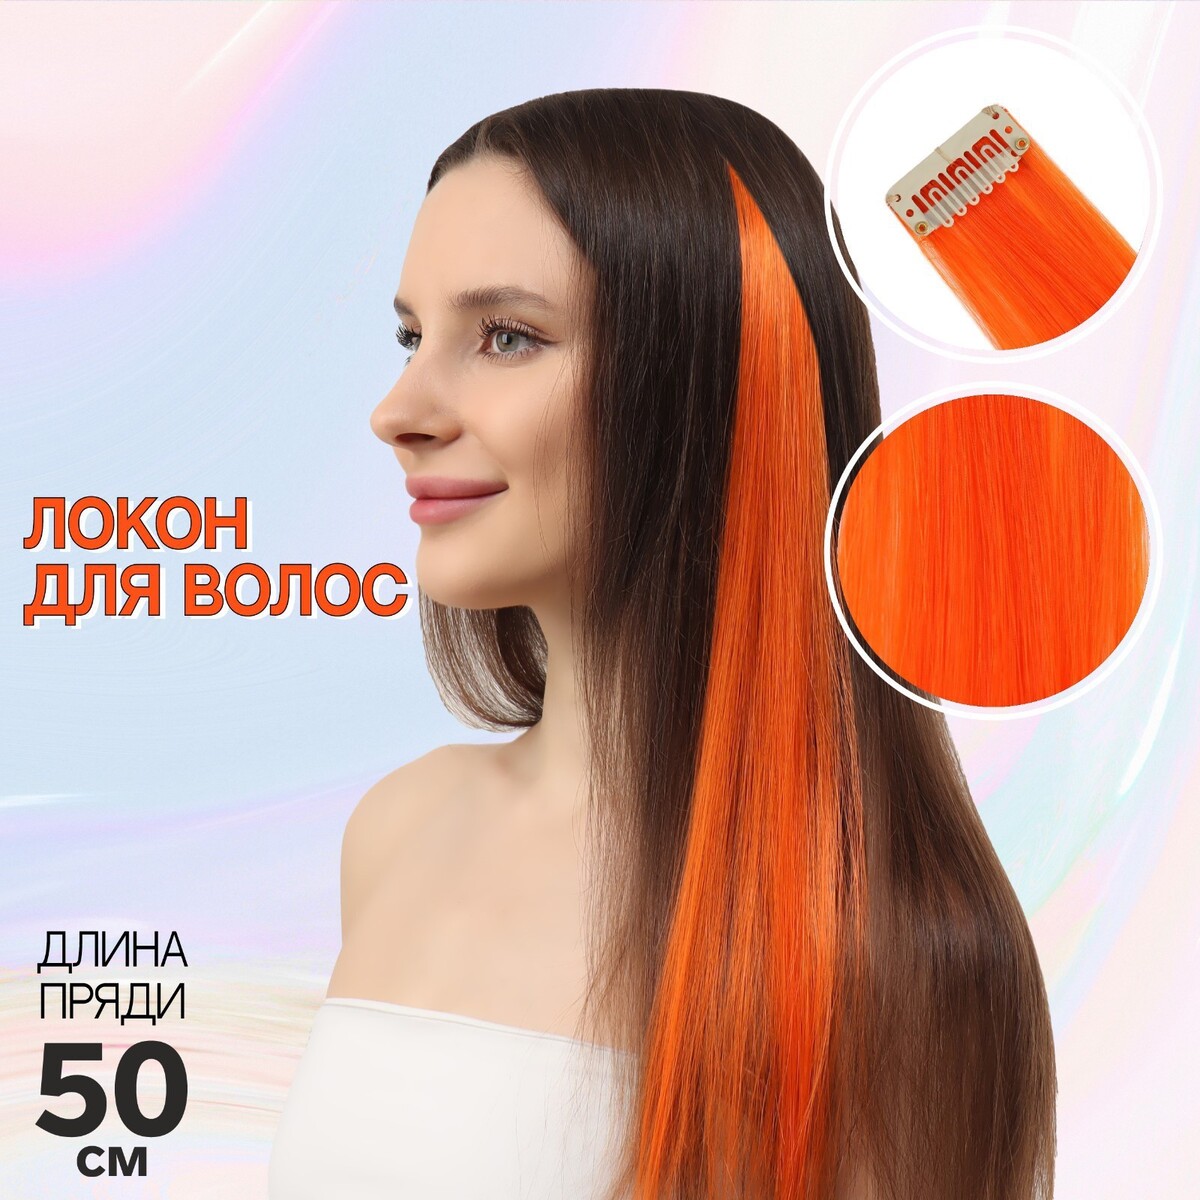 Локон накладной, прямой волос, на заколке, 50 см, 5 гр, цвет оранжевый локон накладной бантик прямой волос на заколке 32 см микс